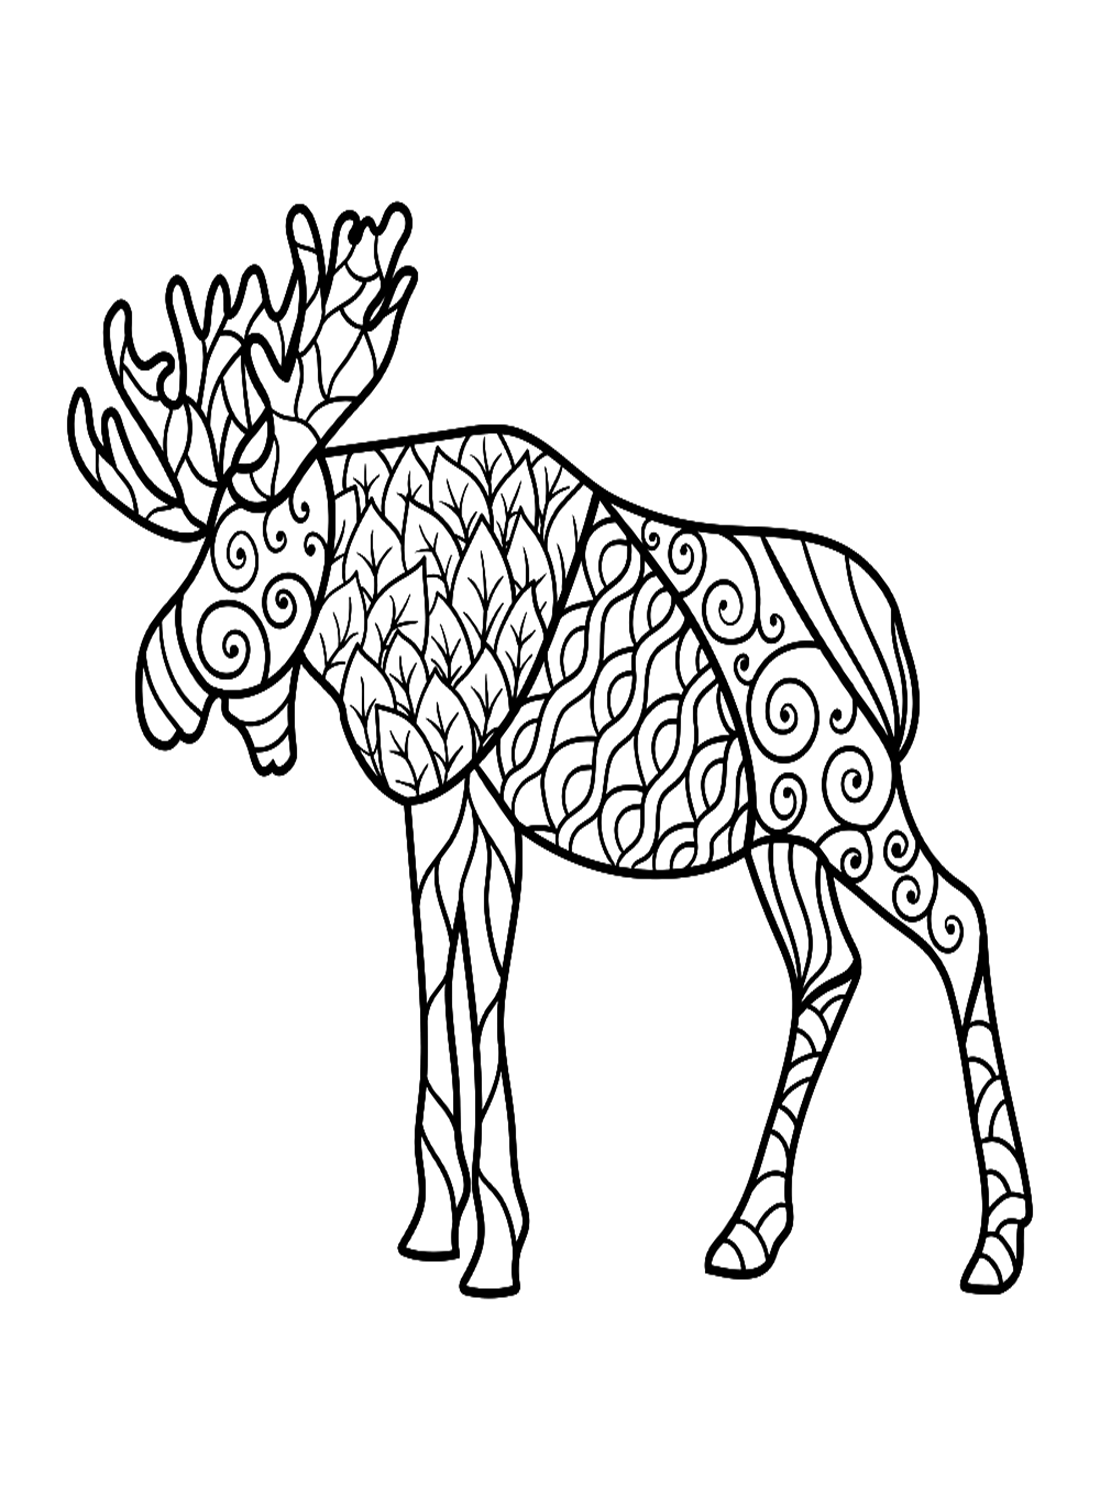 Alce in stile Zentangle di Elk